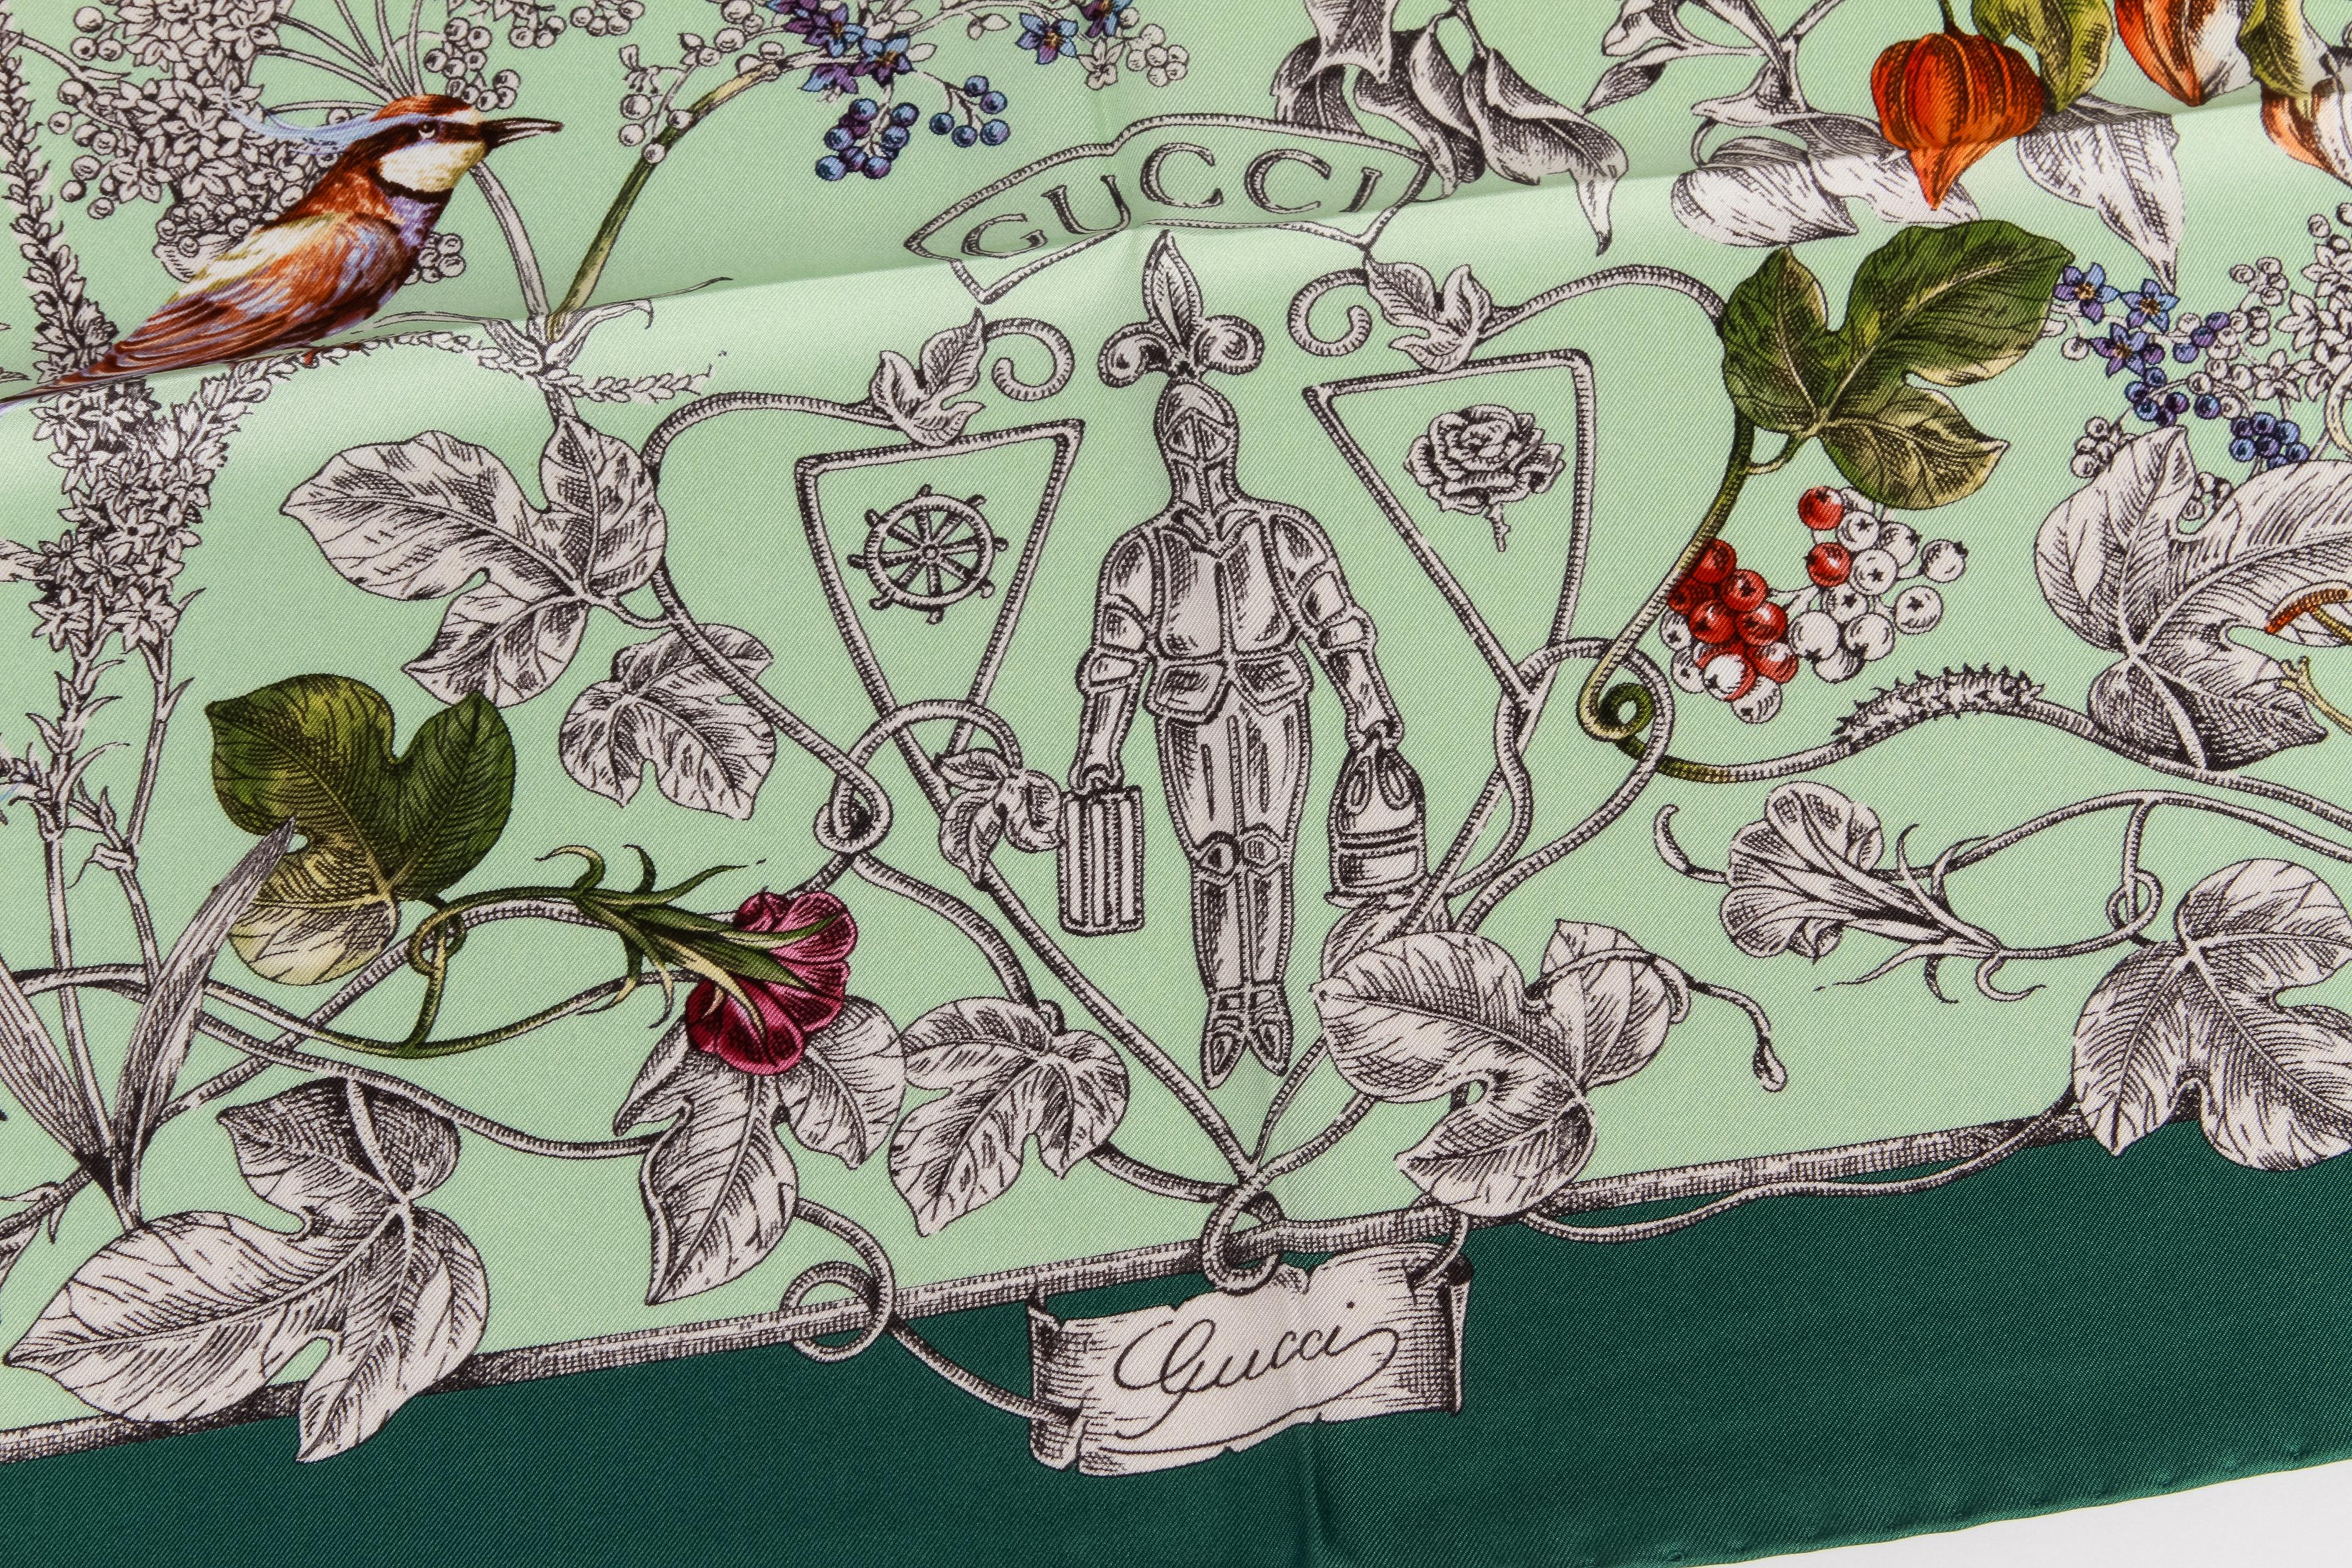 Gucci brandneuen Schal mit Blumen und Vögeln, grün, mint Farbe Weg, 100% Seide, 35